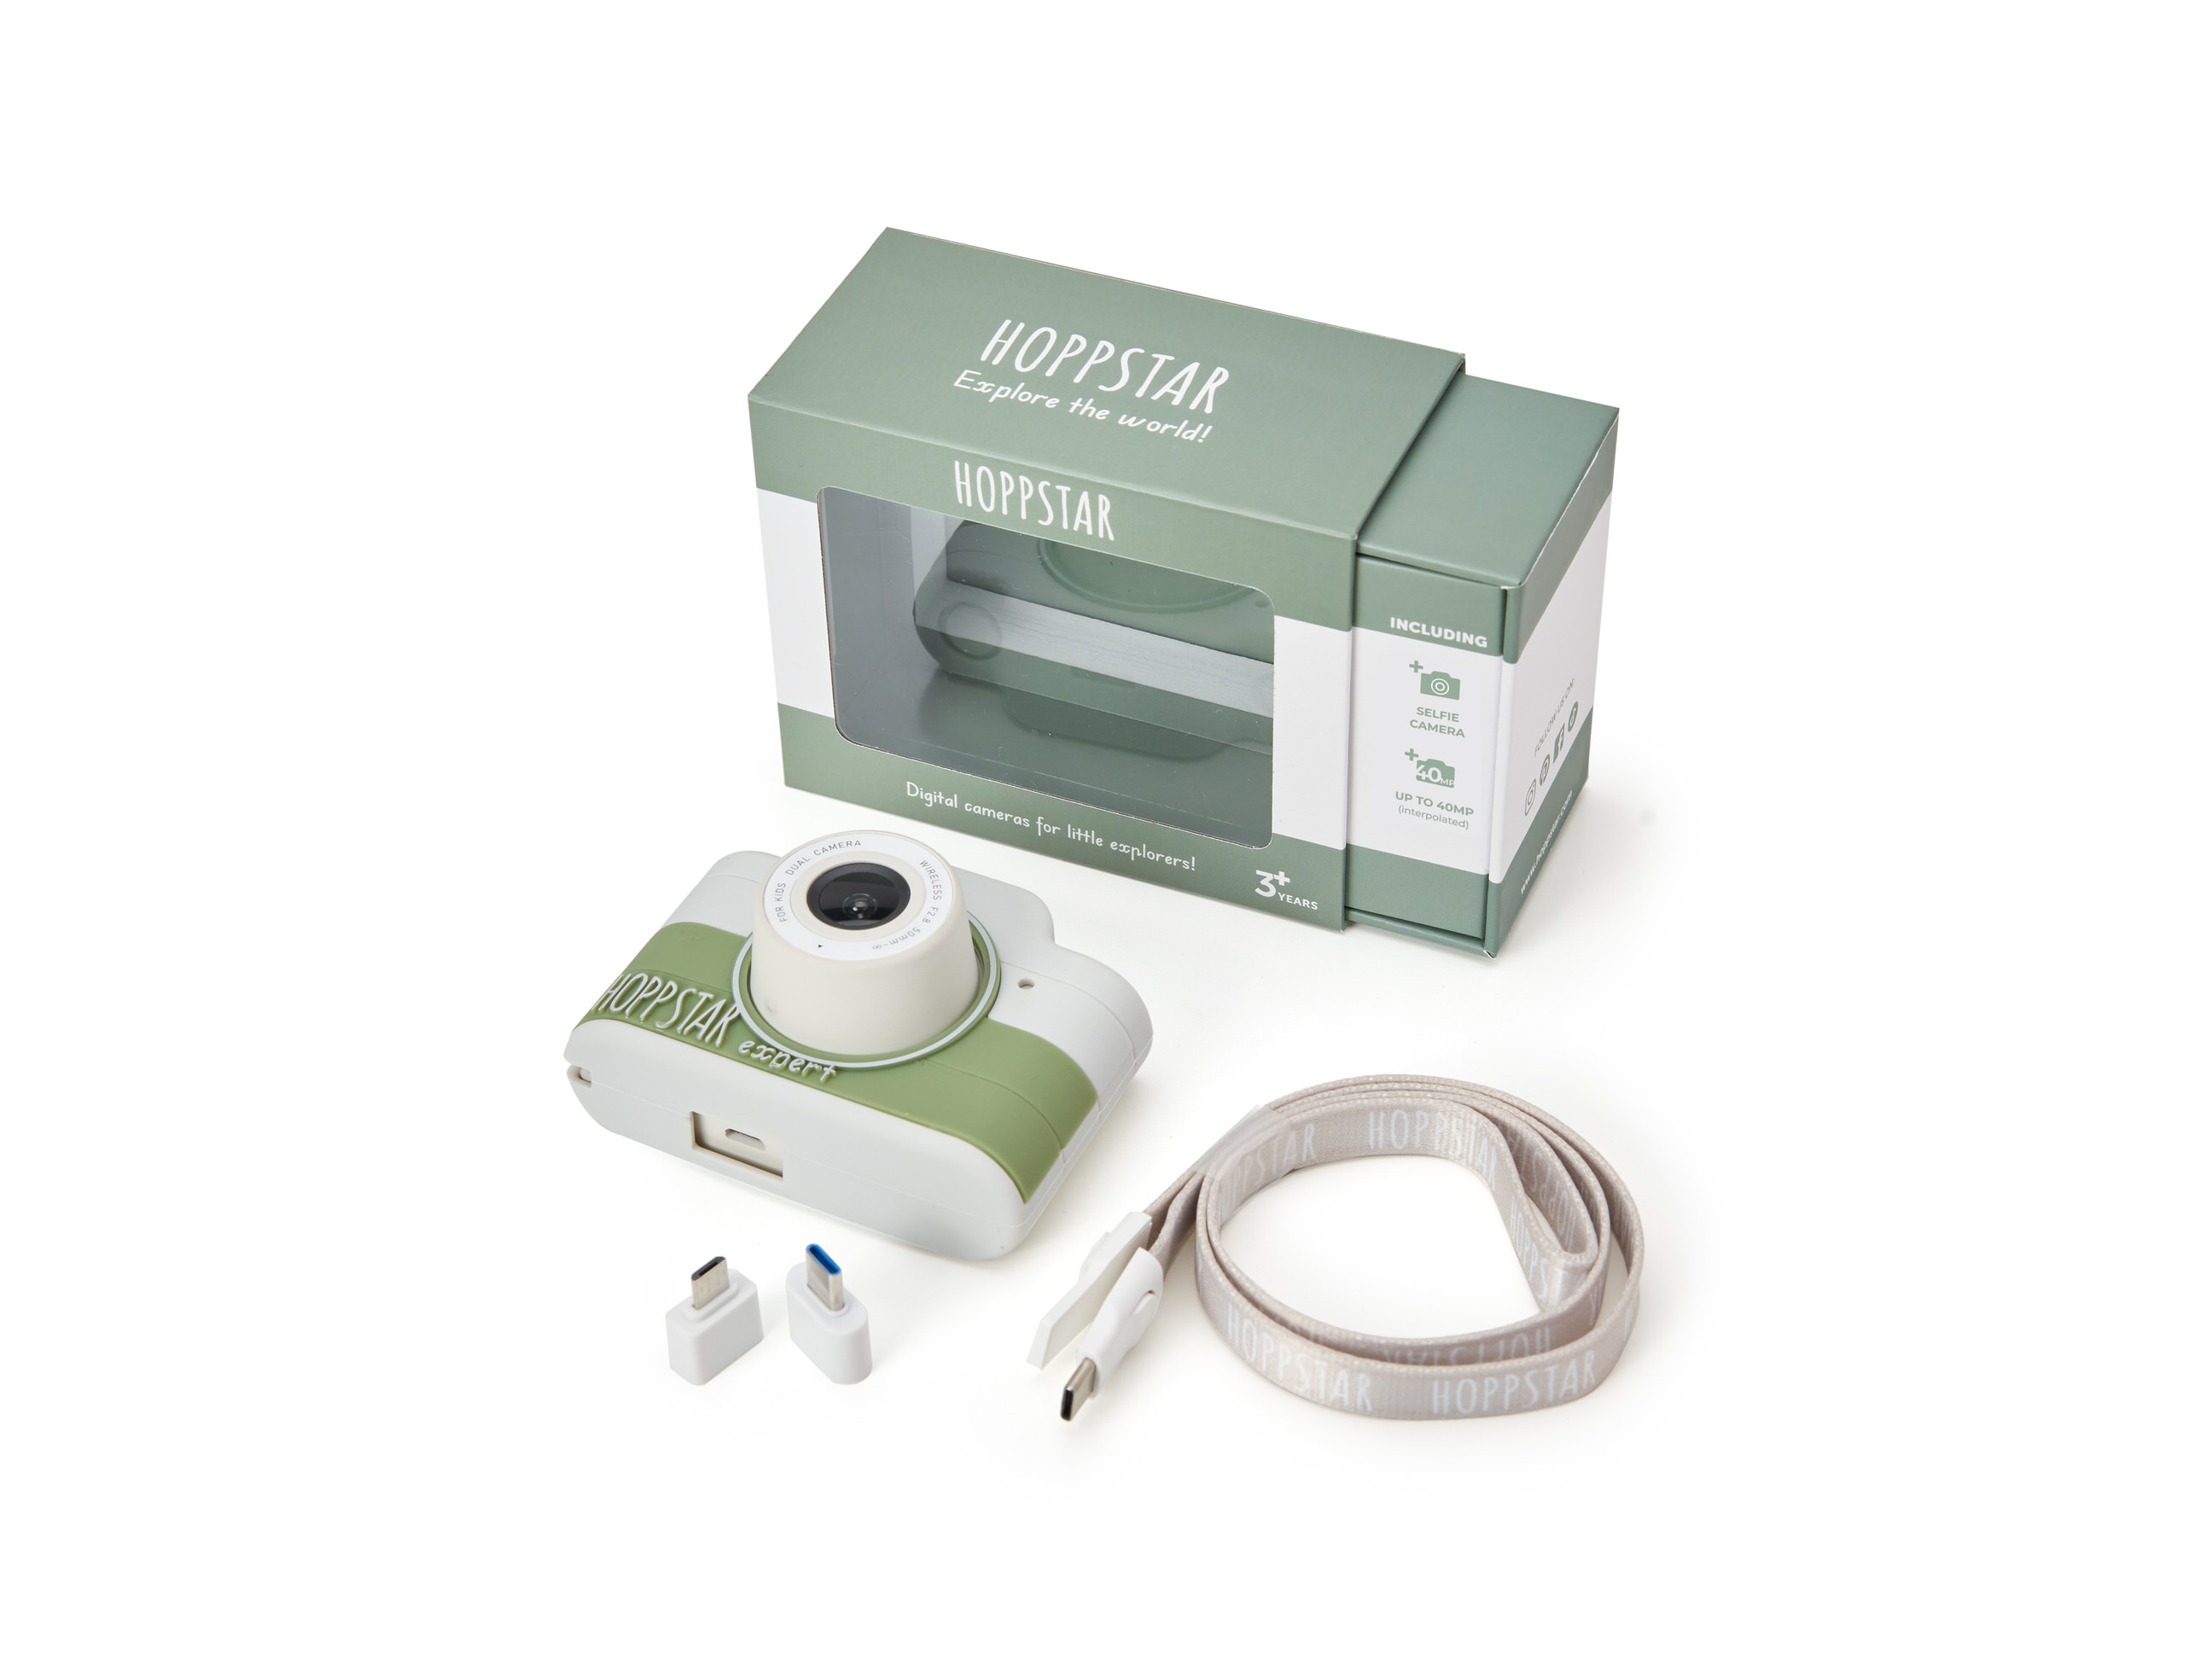 Hoppstar Expert Kamera mit Laurel (grün/weiß) Silikonhülle, kompletter Lieferumfang